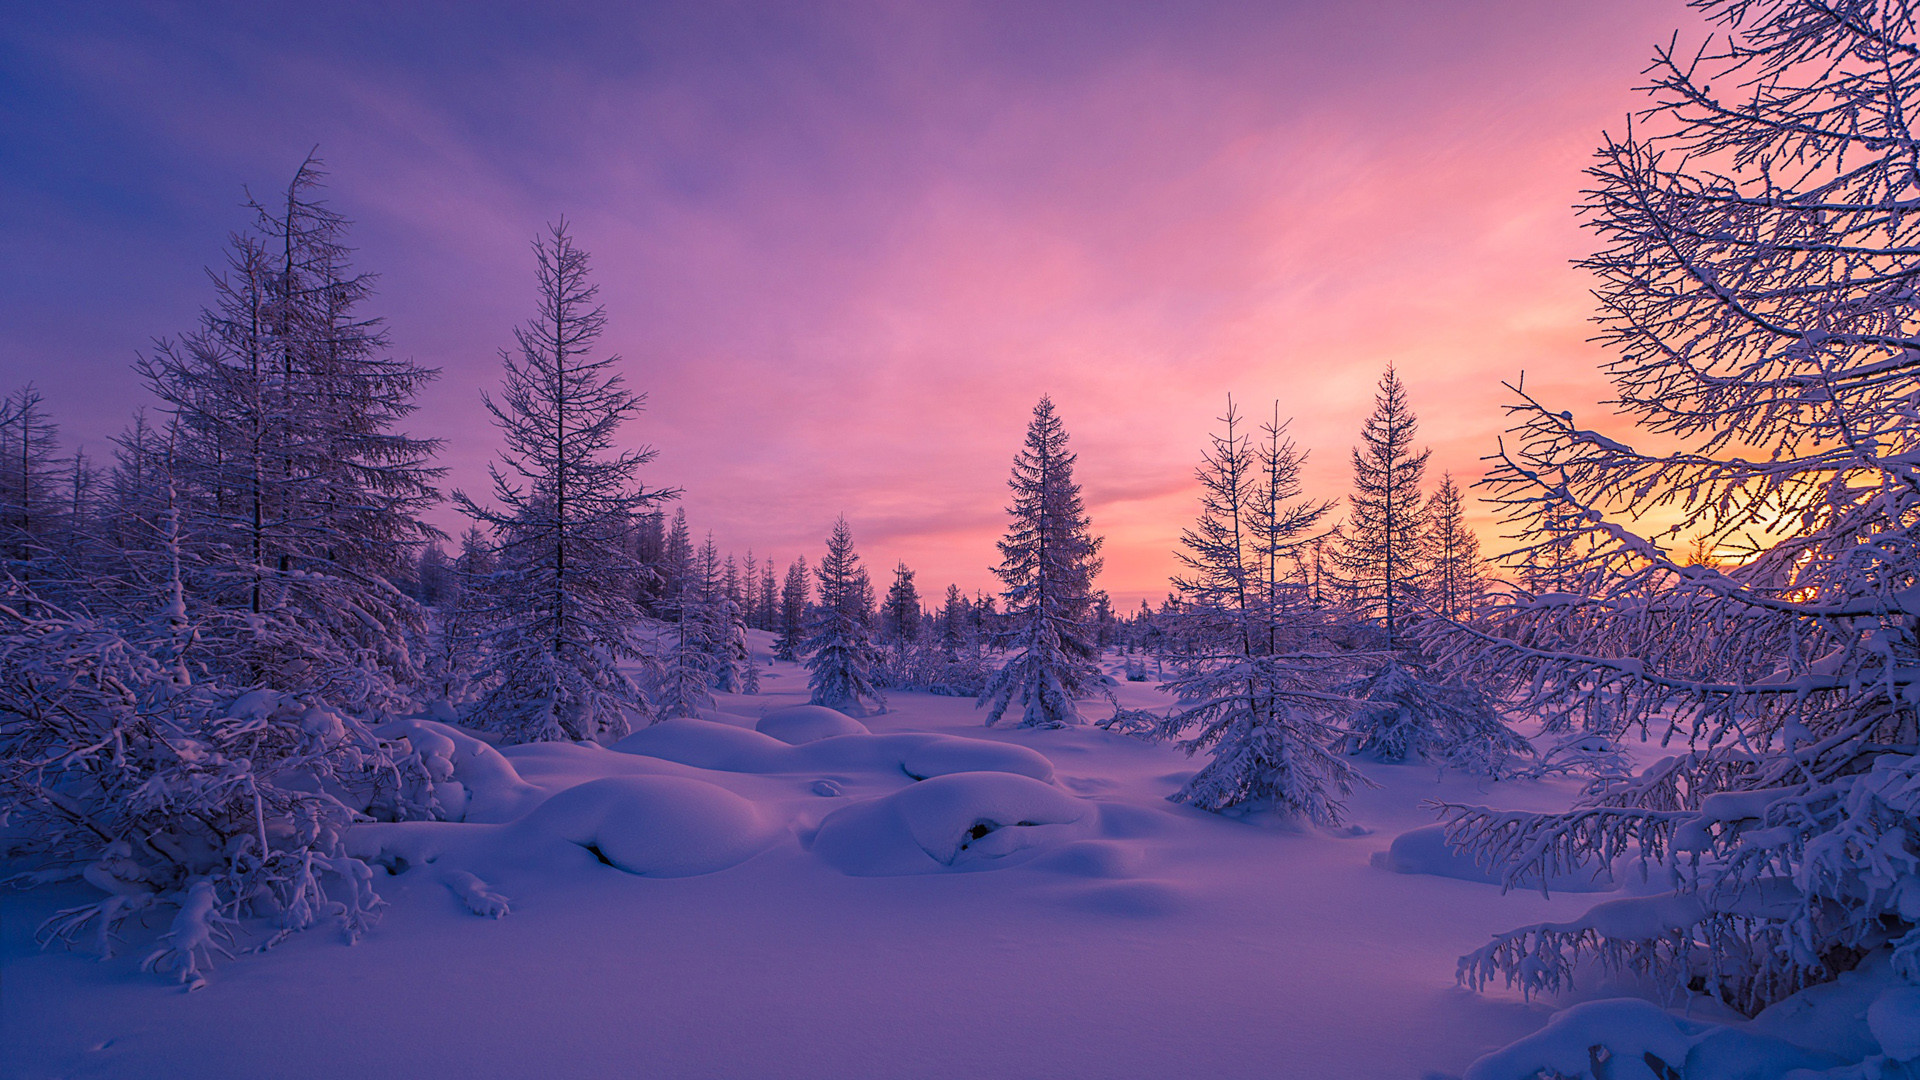 Download Original Wallpaper Category - Winter Sunset - 1920x1080 Wallpaper  